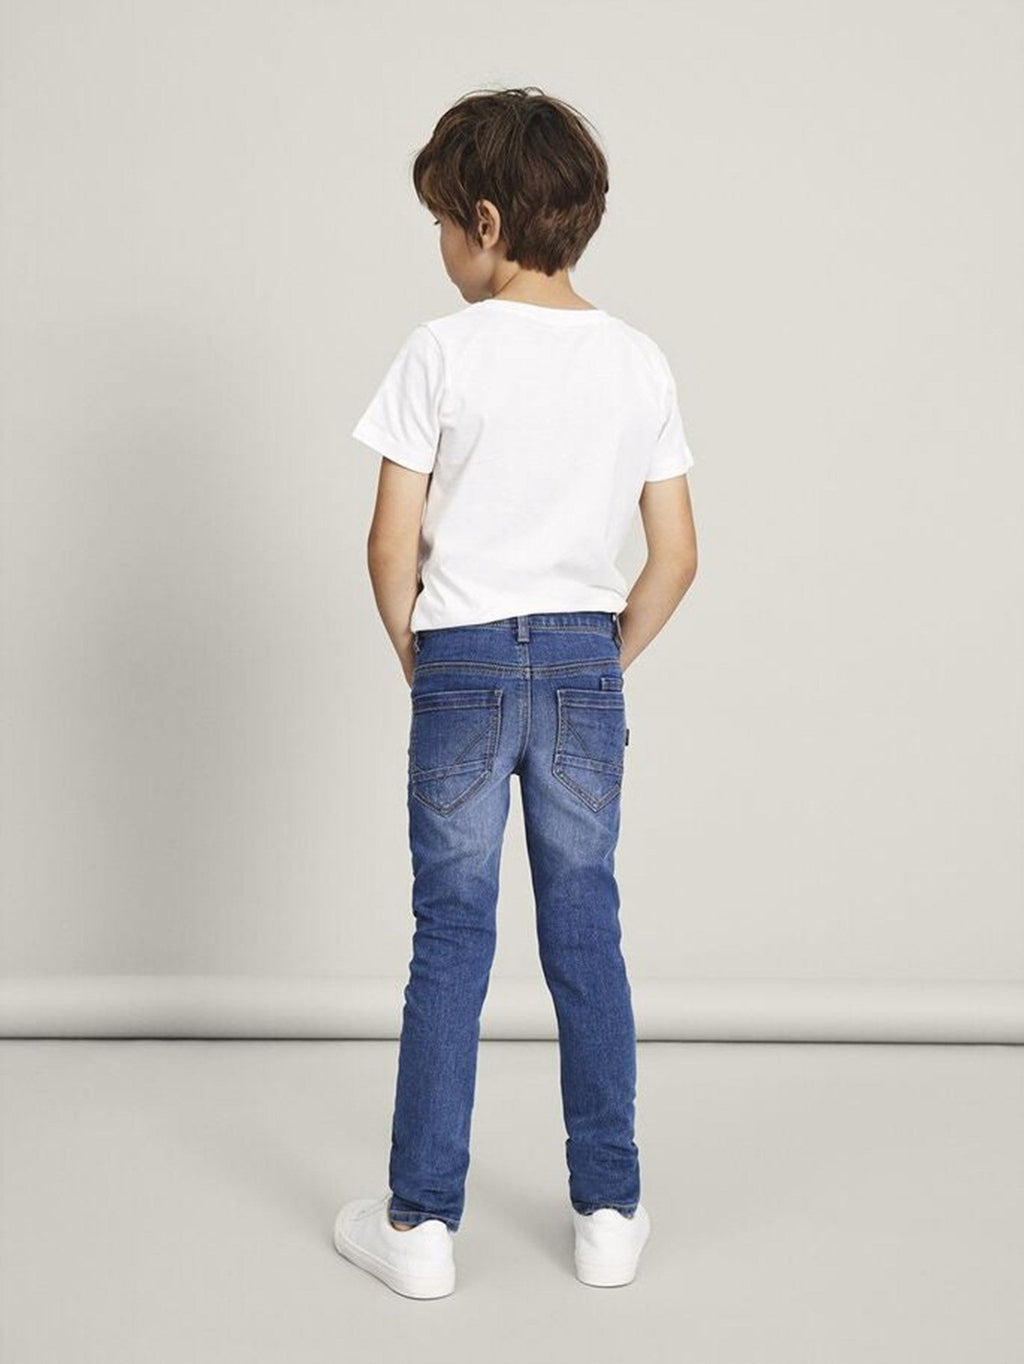 Jeans fit x -slim - denim blu medio